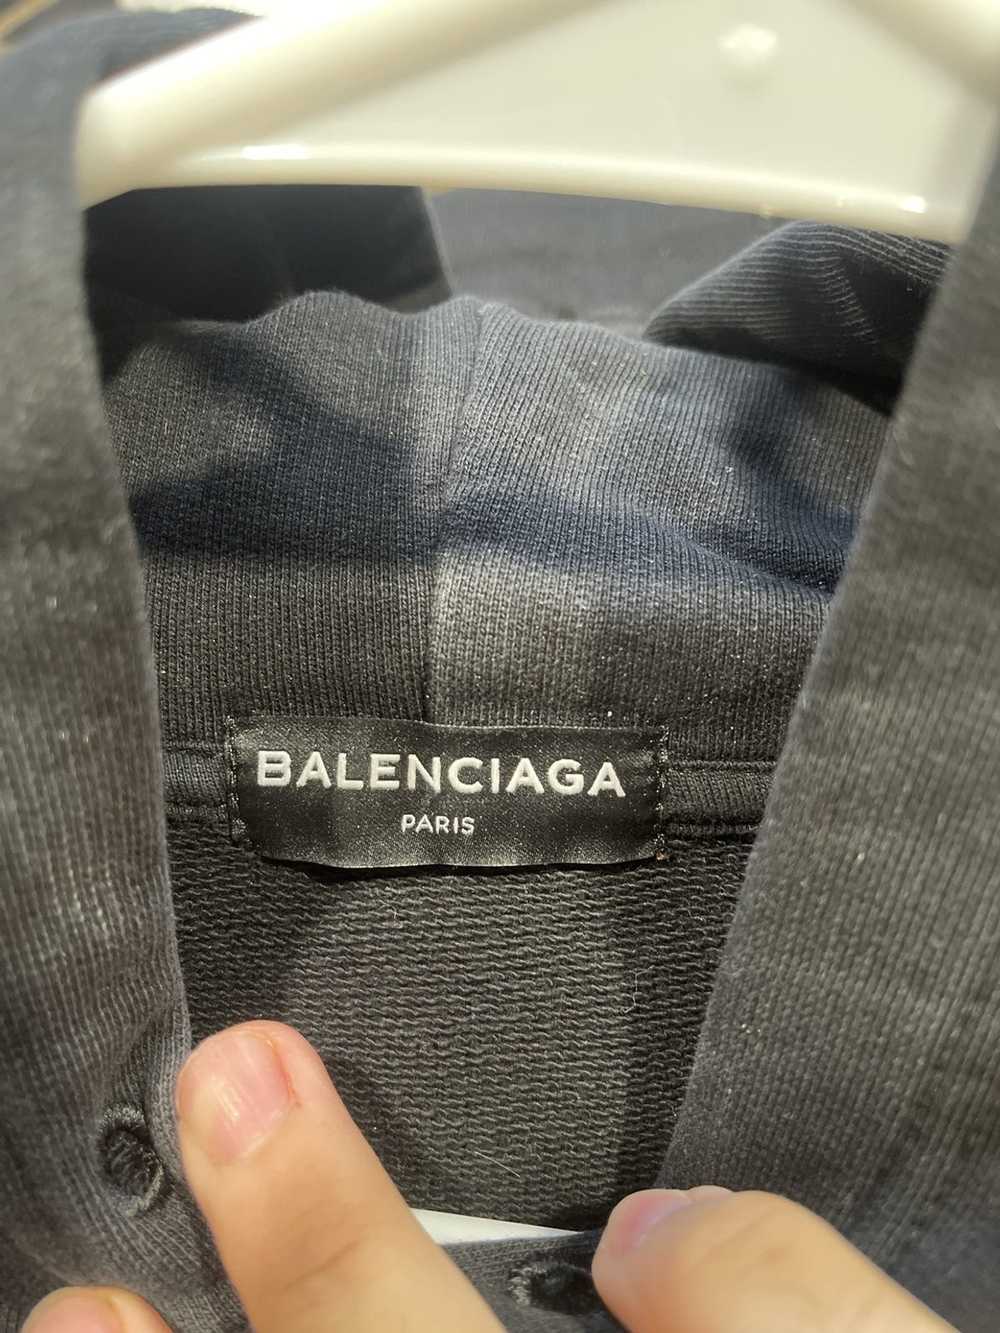 Balenciaga Balenciaga Campaign hoodie 2017 - image 8